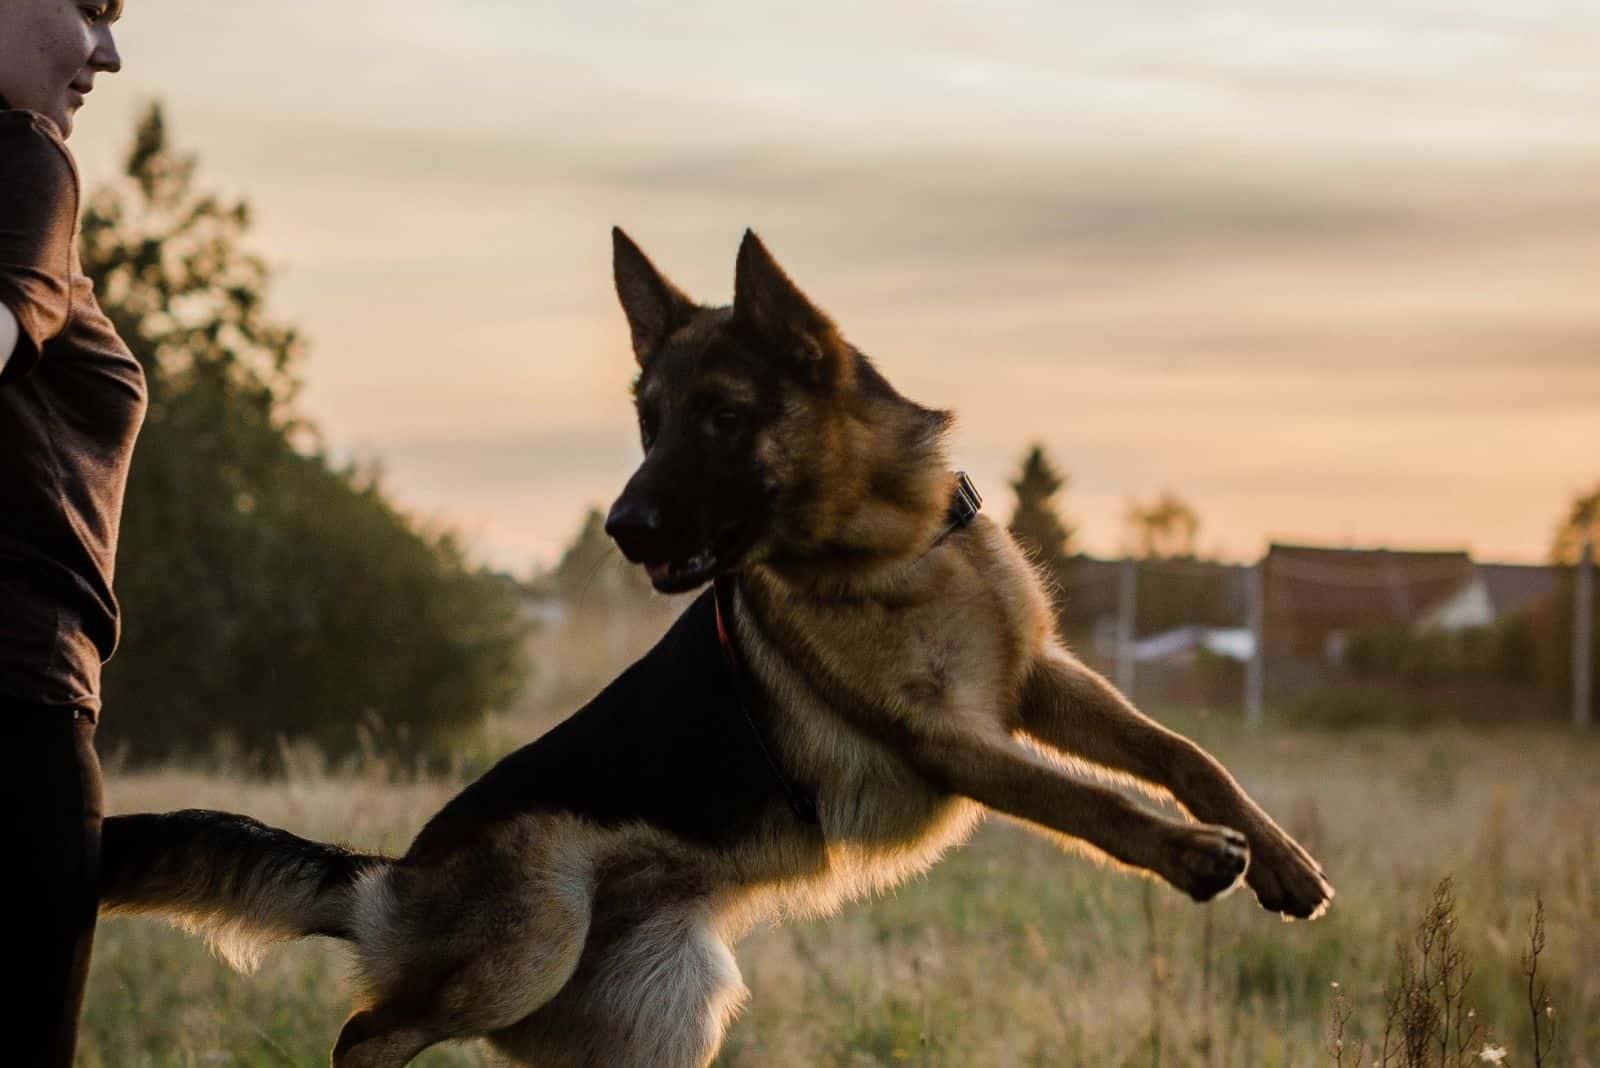 a woman trains a German Shepherd dog